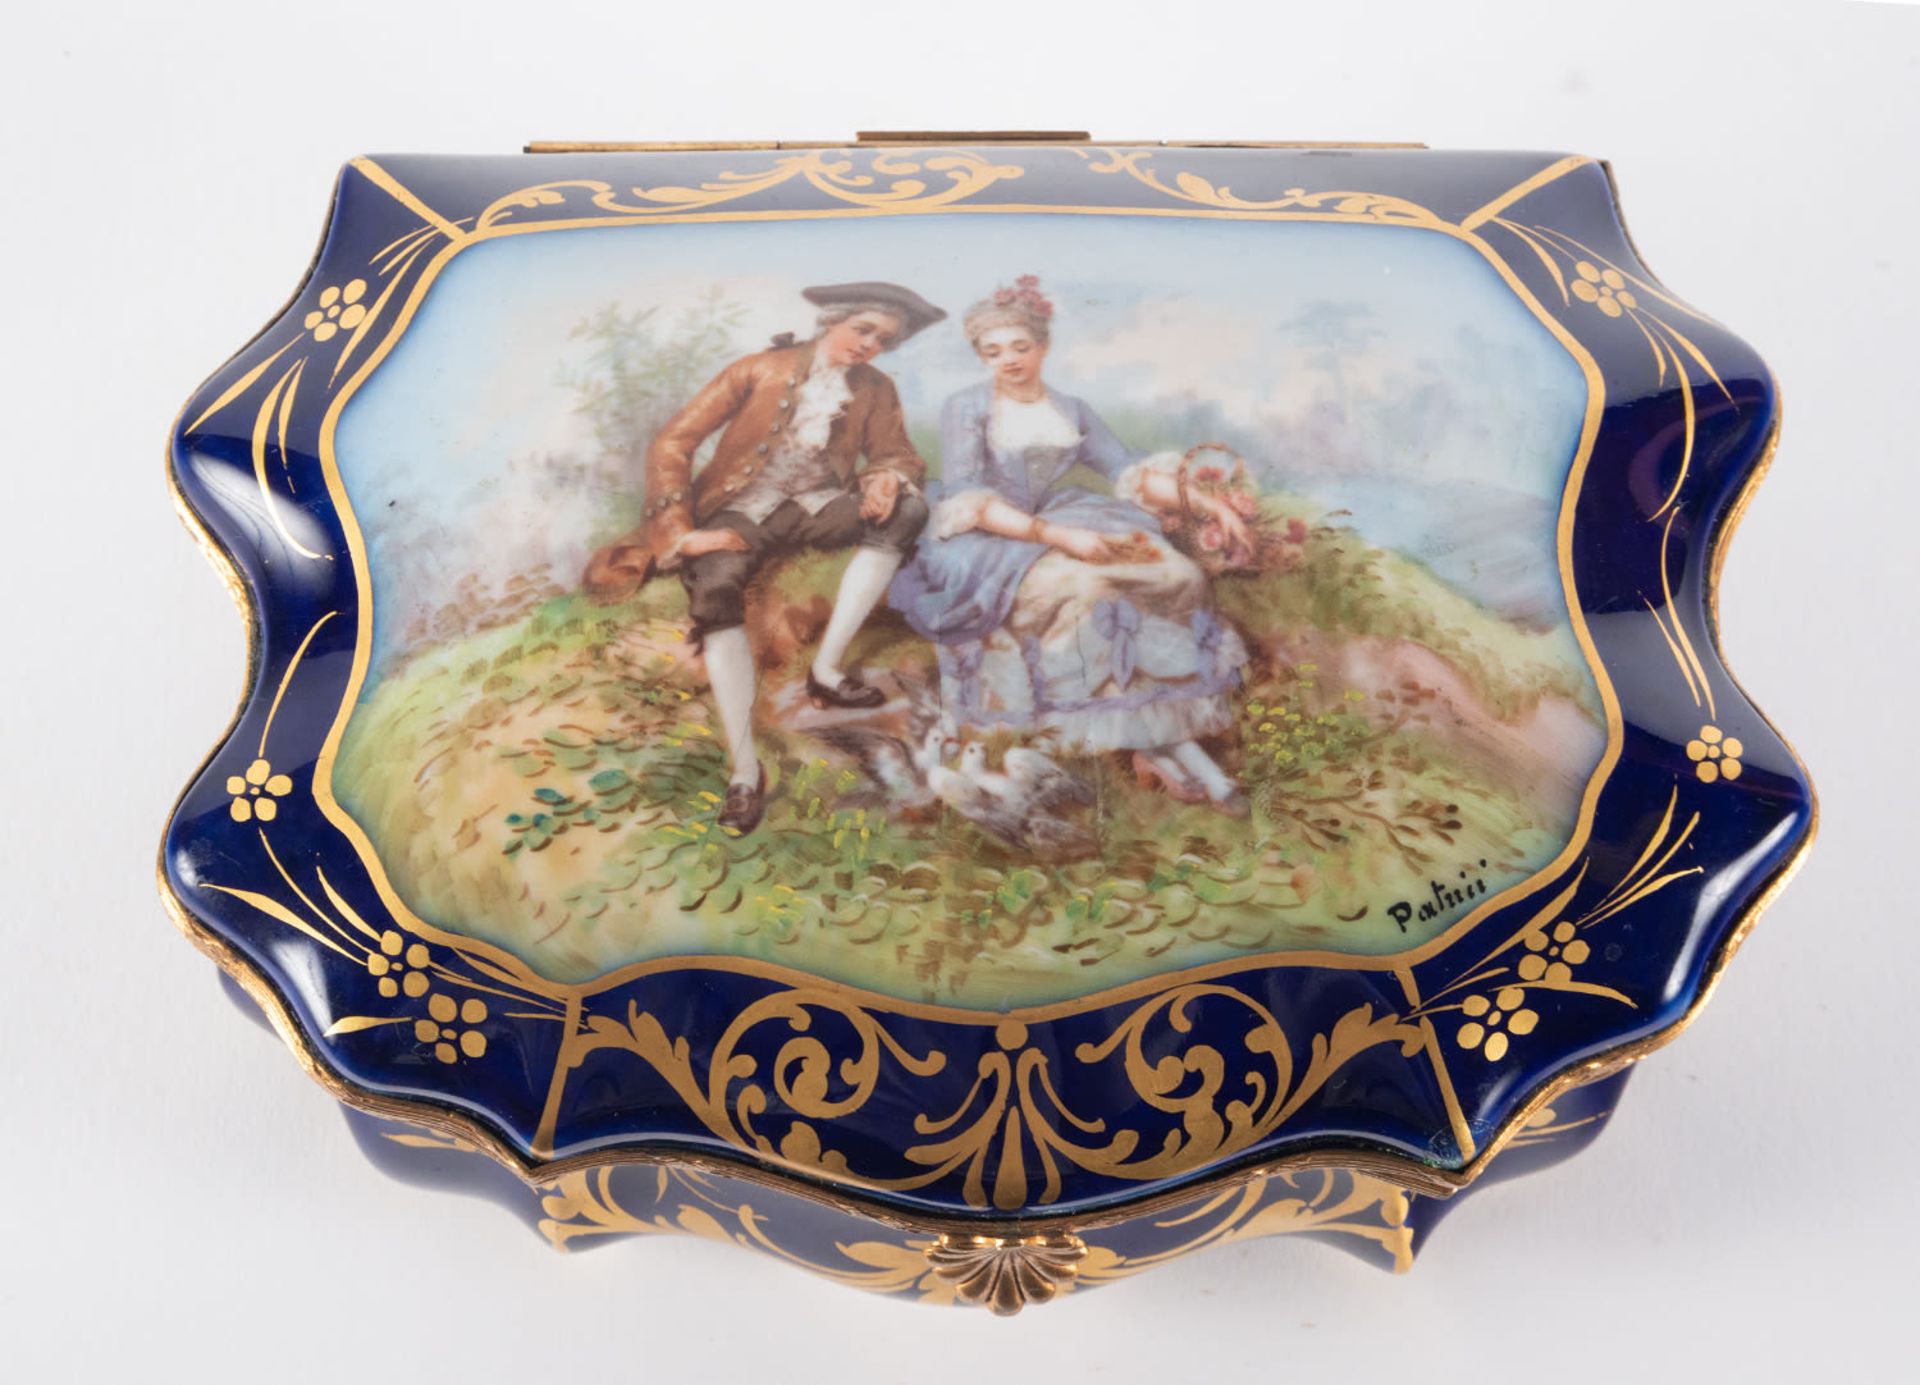 Enamelled Sèvres porcelain jewelry box, 19th century, Chateau de les Etoiles series - Image 3 of 6